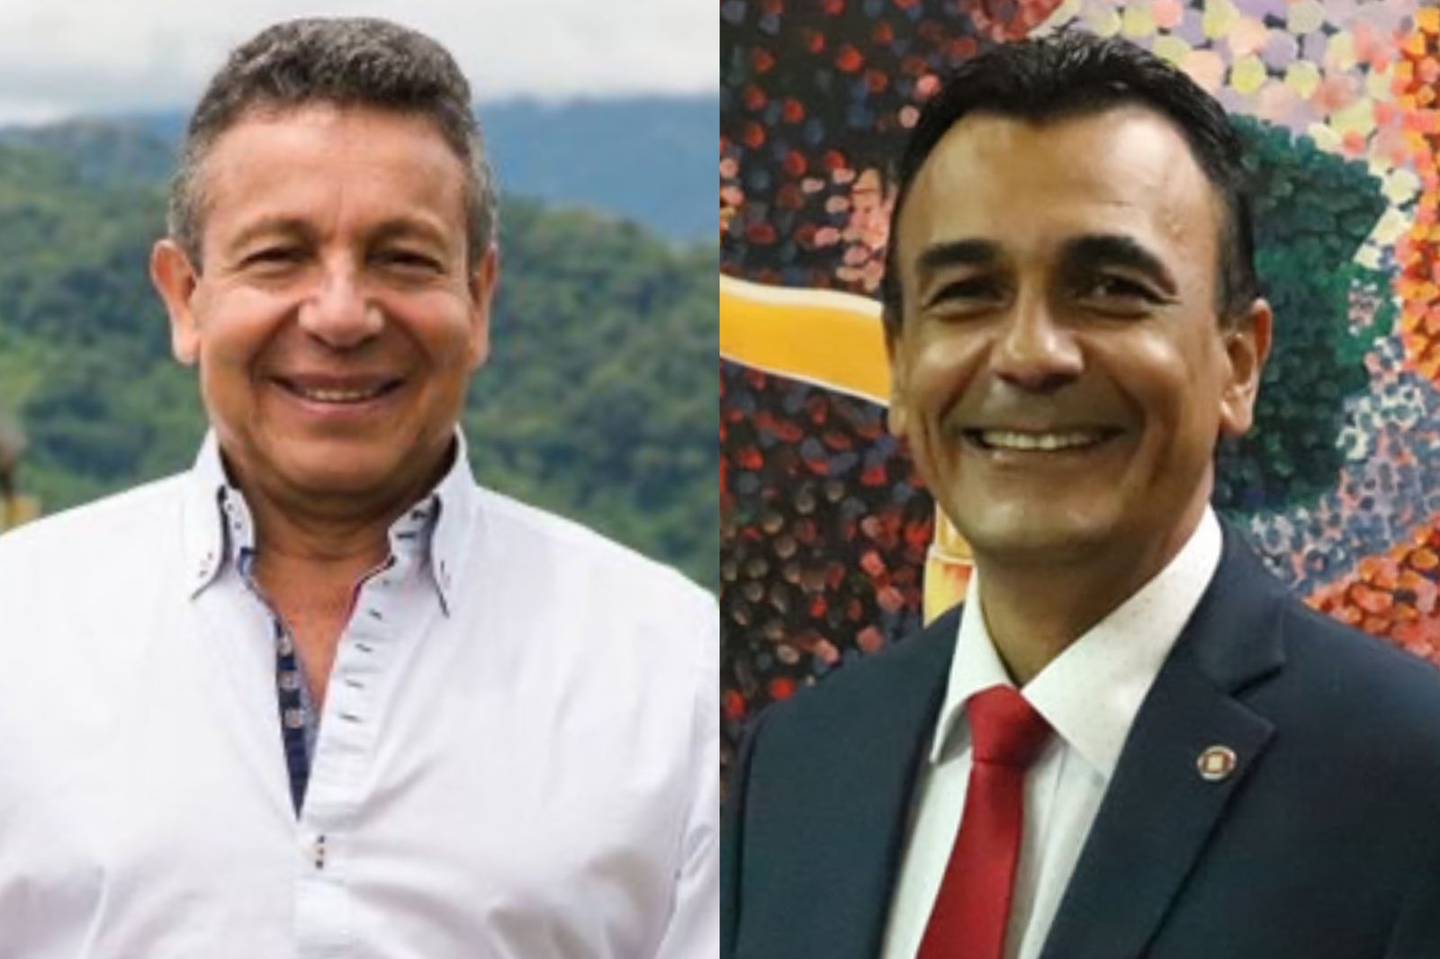 El periodista y abogado, Belisario Solano, perdió la elección a la presidencia del  Colegio de Abogados  contra Francisco Cruz, exdirectivo del Banco Popular